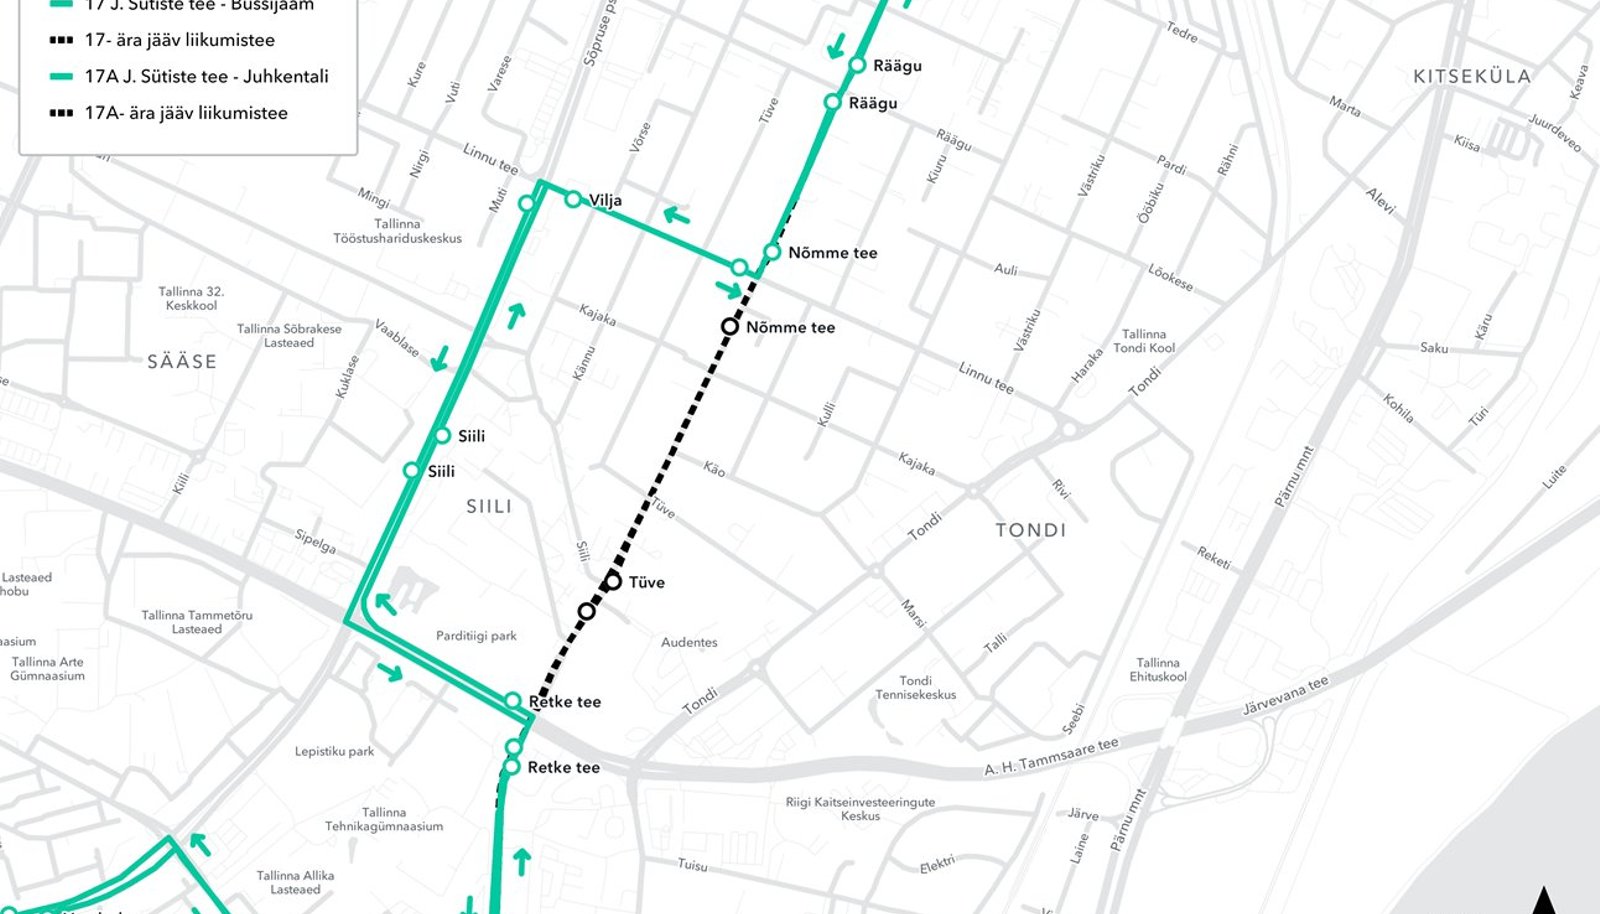 Карта маршрутов автобусов в Таллинне 2020. Автобус 17 в Таллине на карте. Маршрут автобуса 175 Варшава. Маршрут автобуса 40 в Таллине. Автобус 290 маршрут на карте